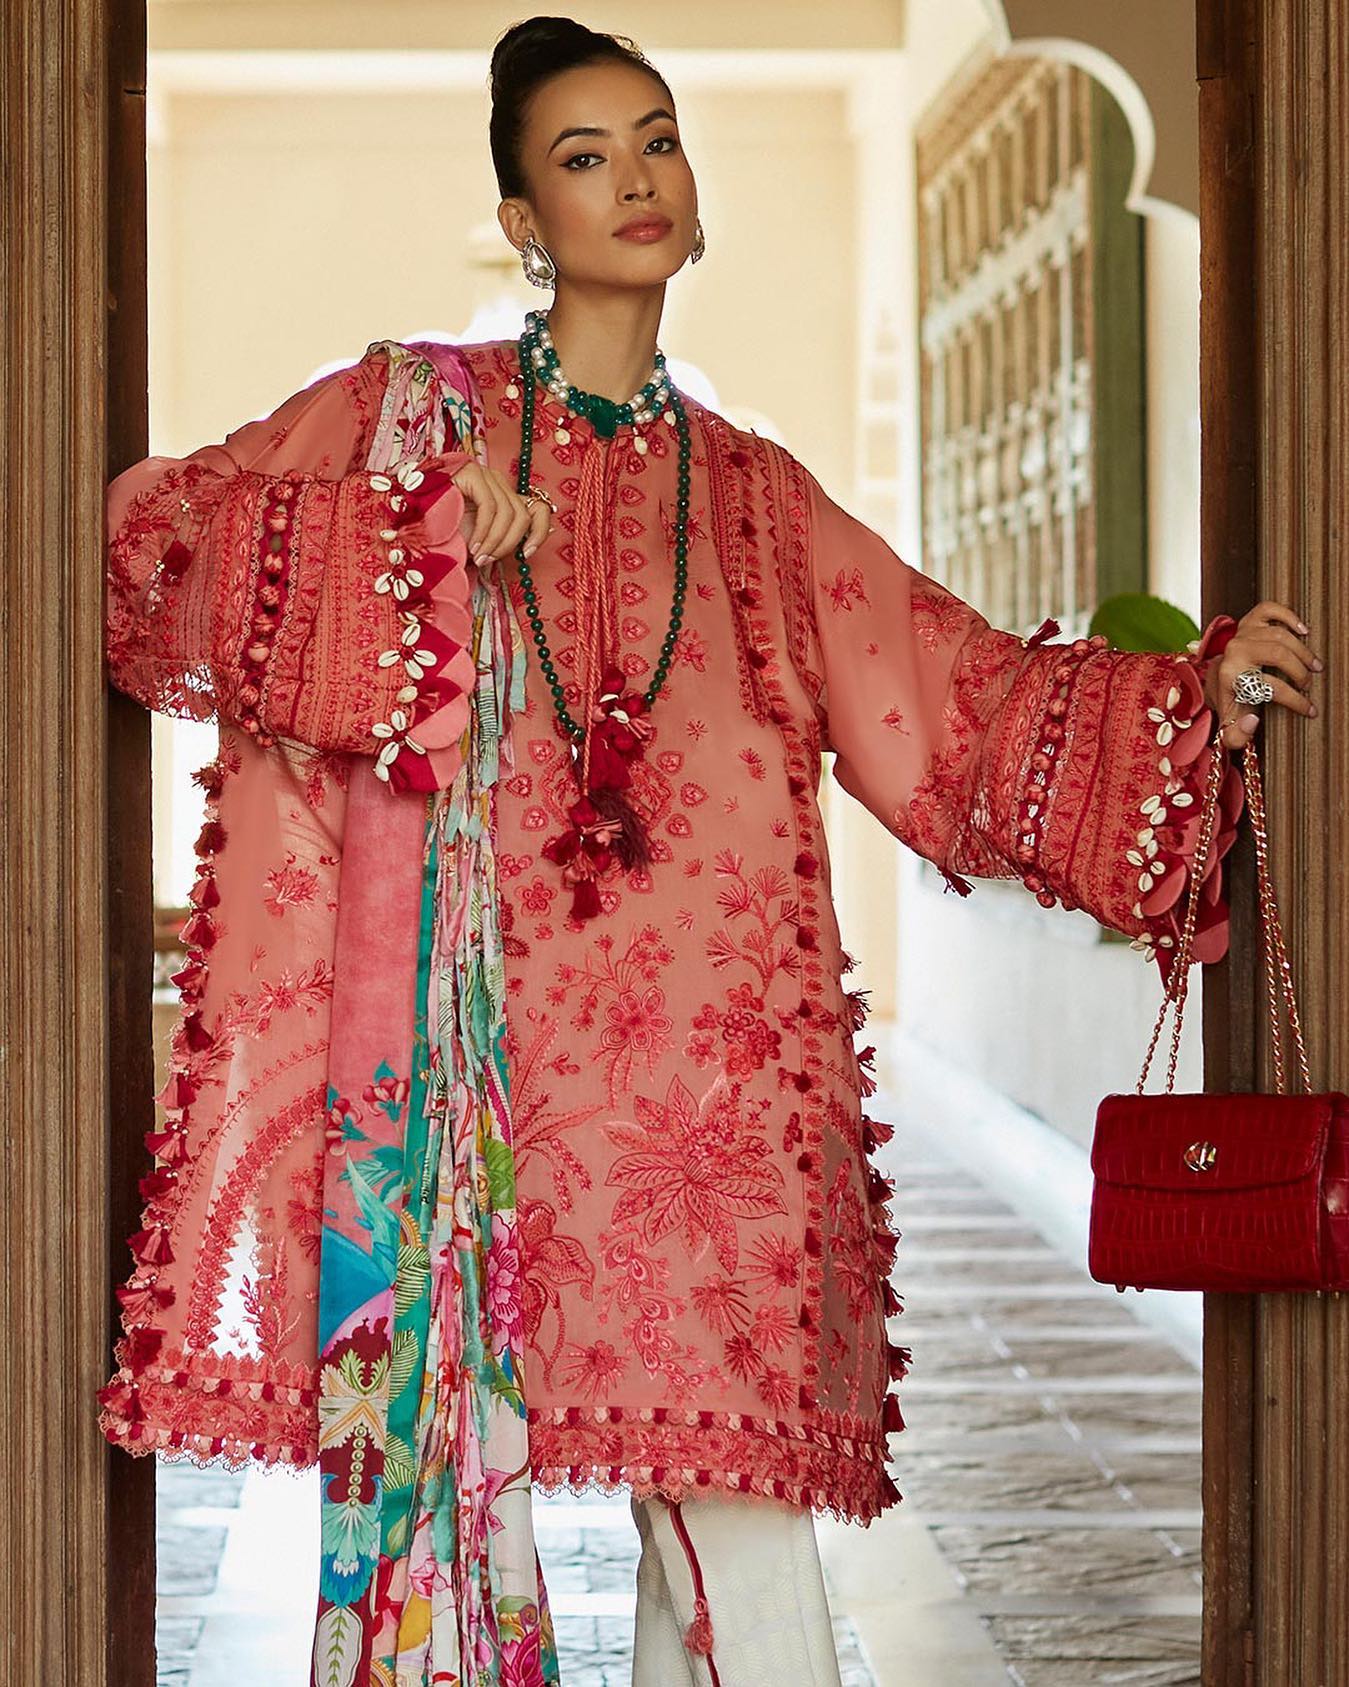 Buy Now - Arna (5B) - Elan Lawn'23 - Shahana Collection UK - Summer Lawn - Pakistani Designer wear - Wedding and Bridal party wear dresses - Elan in UK 